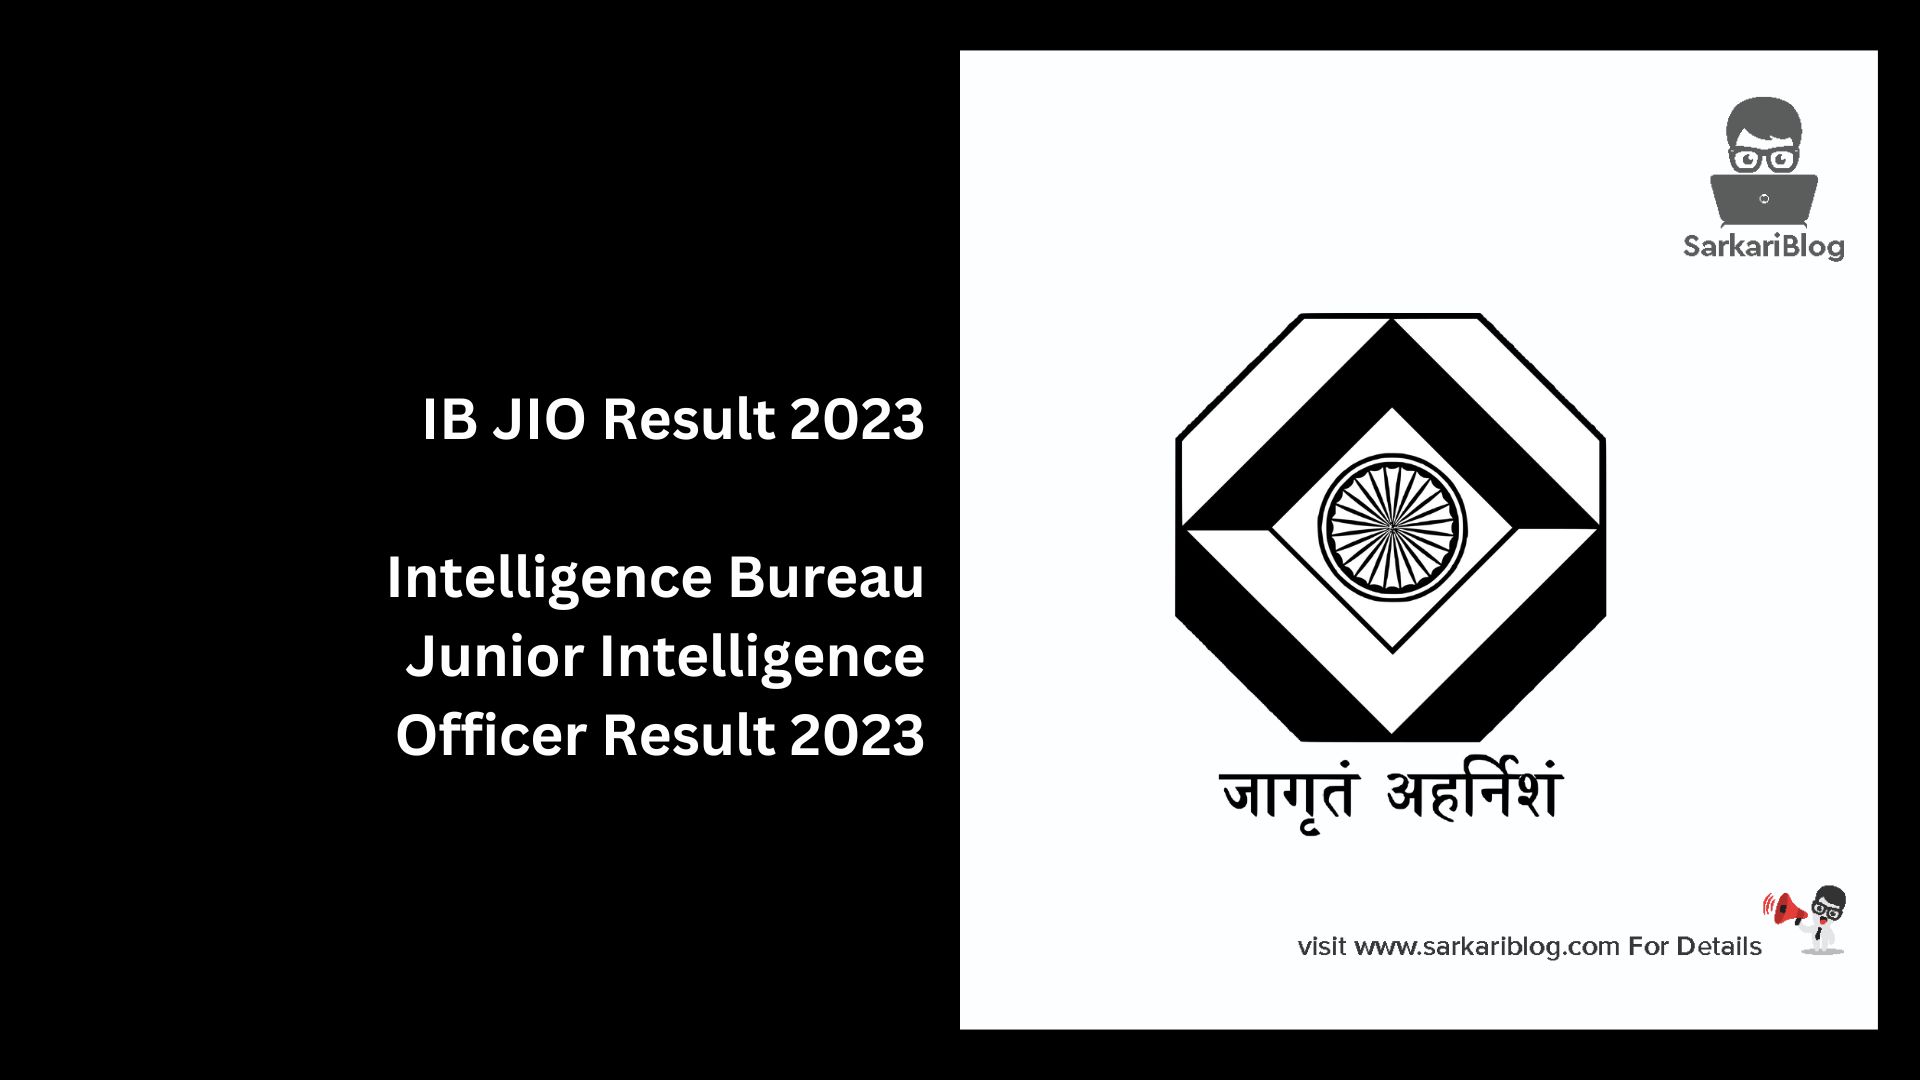 IB JIO Result 2023